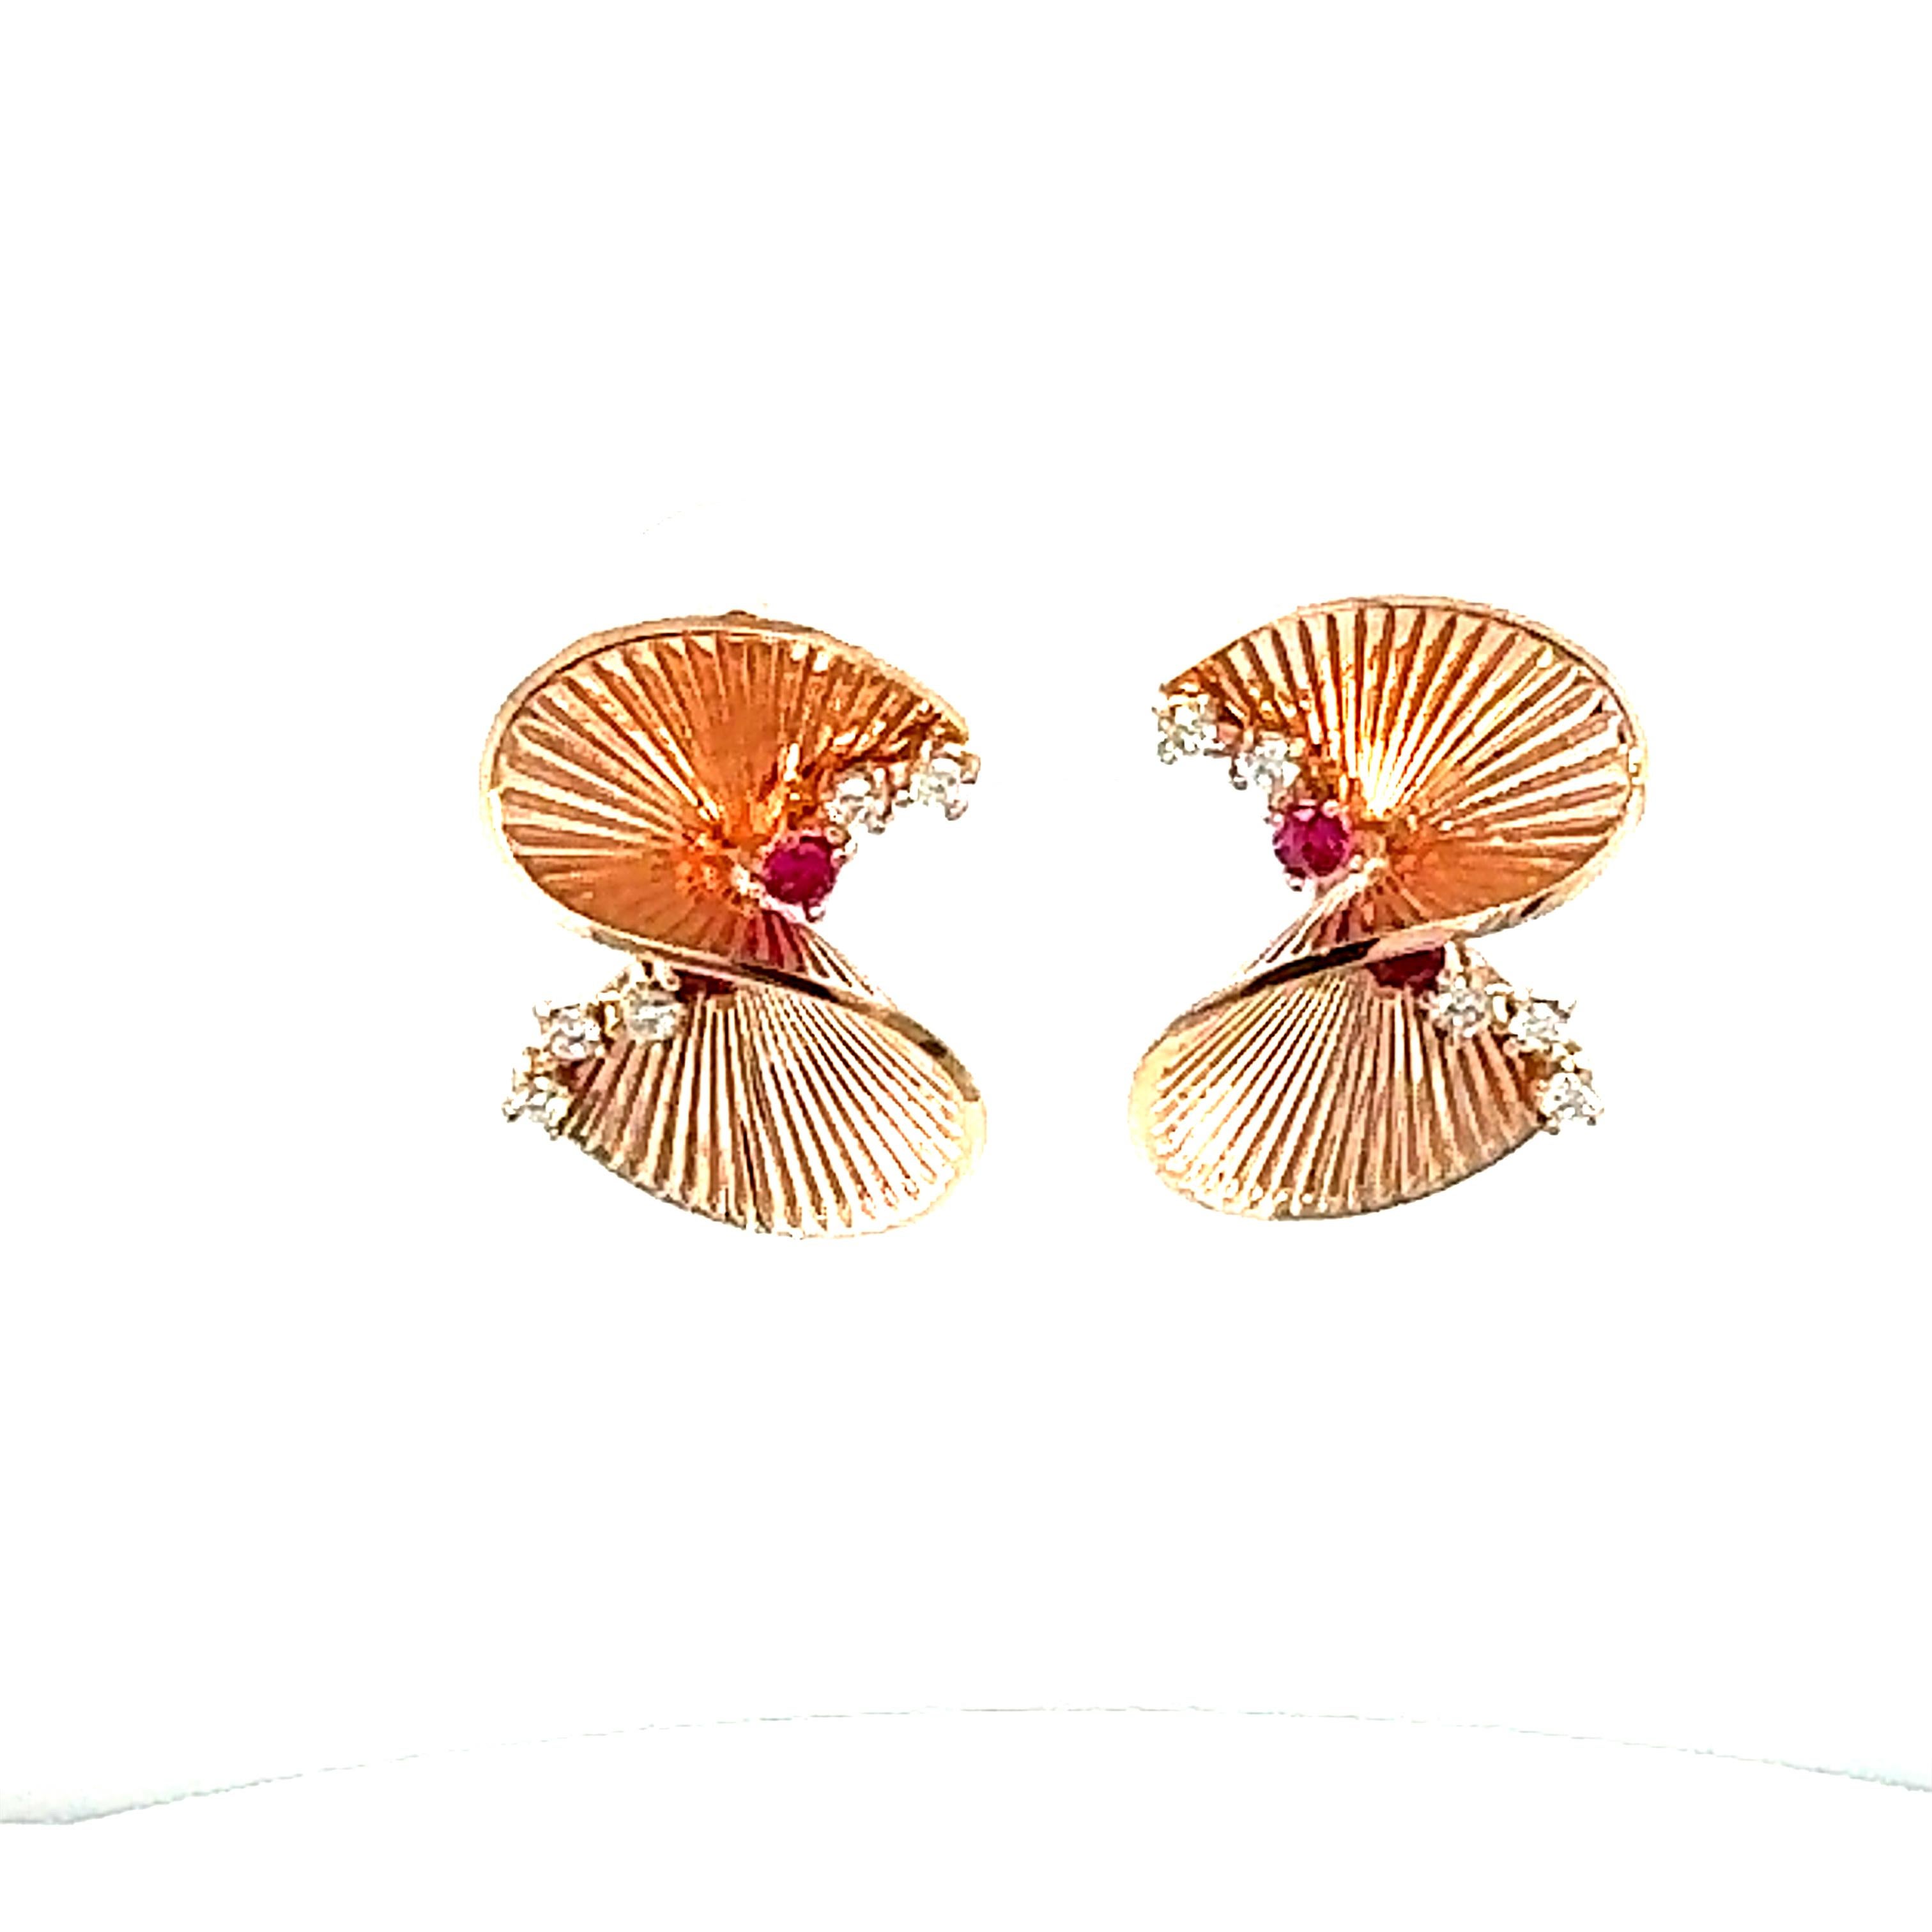 0,34 Karat Diamant Rose Gold Art Deco inspirierte Ohrringe

Diese filigranen Ohrringe mit kompliziertem Design sind eine Bereicherung für jede Garderobe! Diese Ohrringe sind von der Art-Deco-Ära inspiriert. 
Die Ohrringe haben 10 Diamanten im